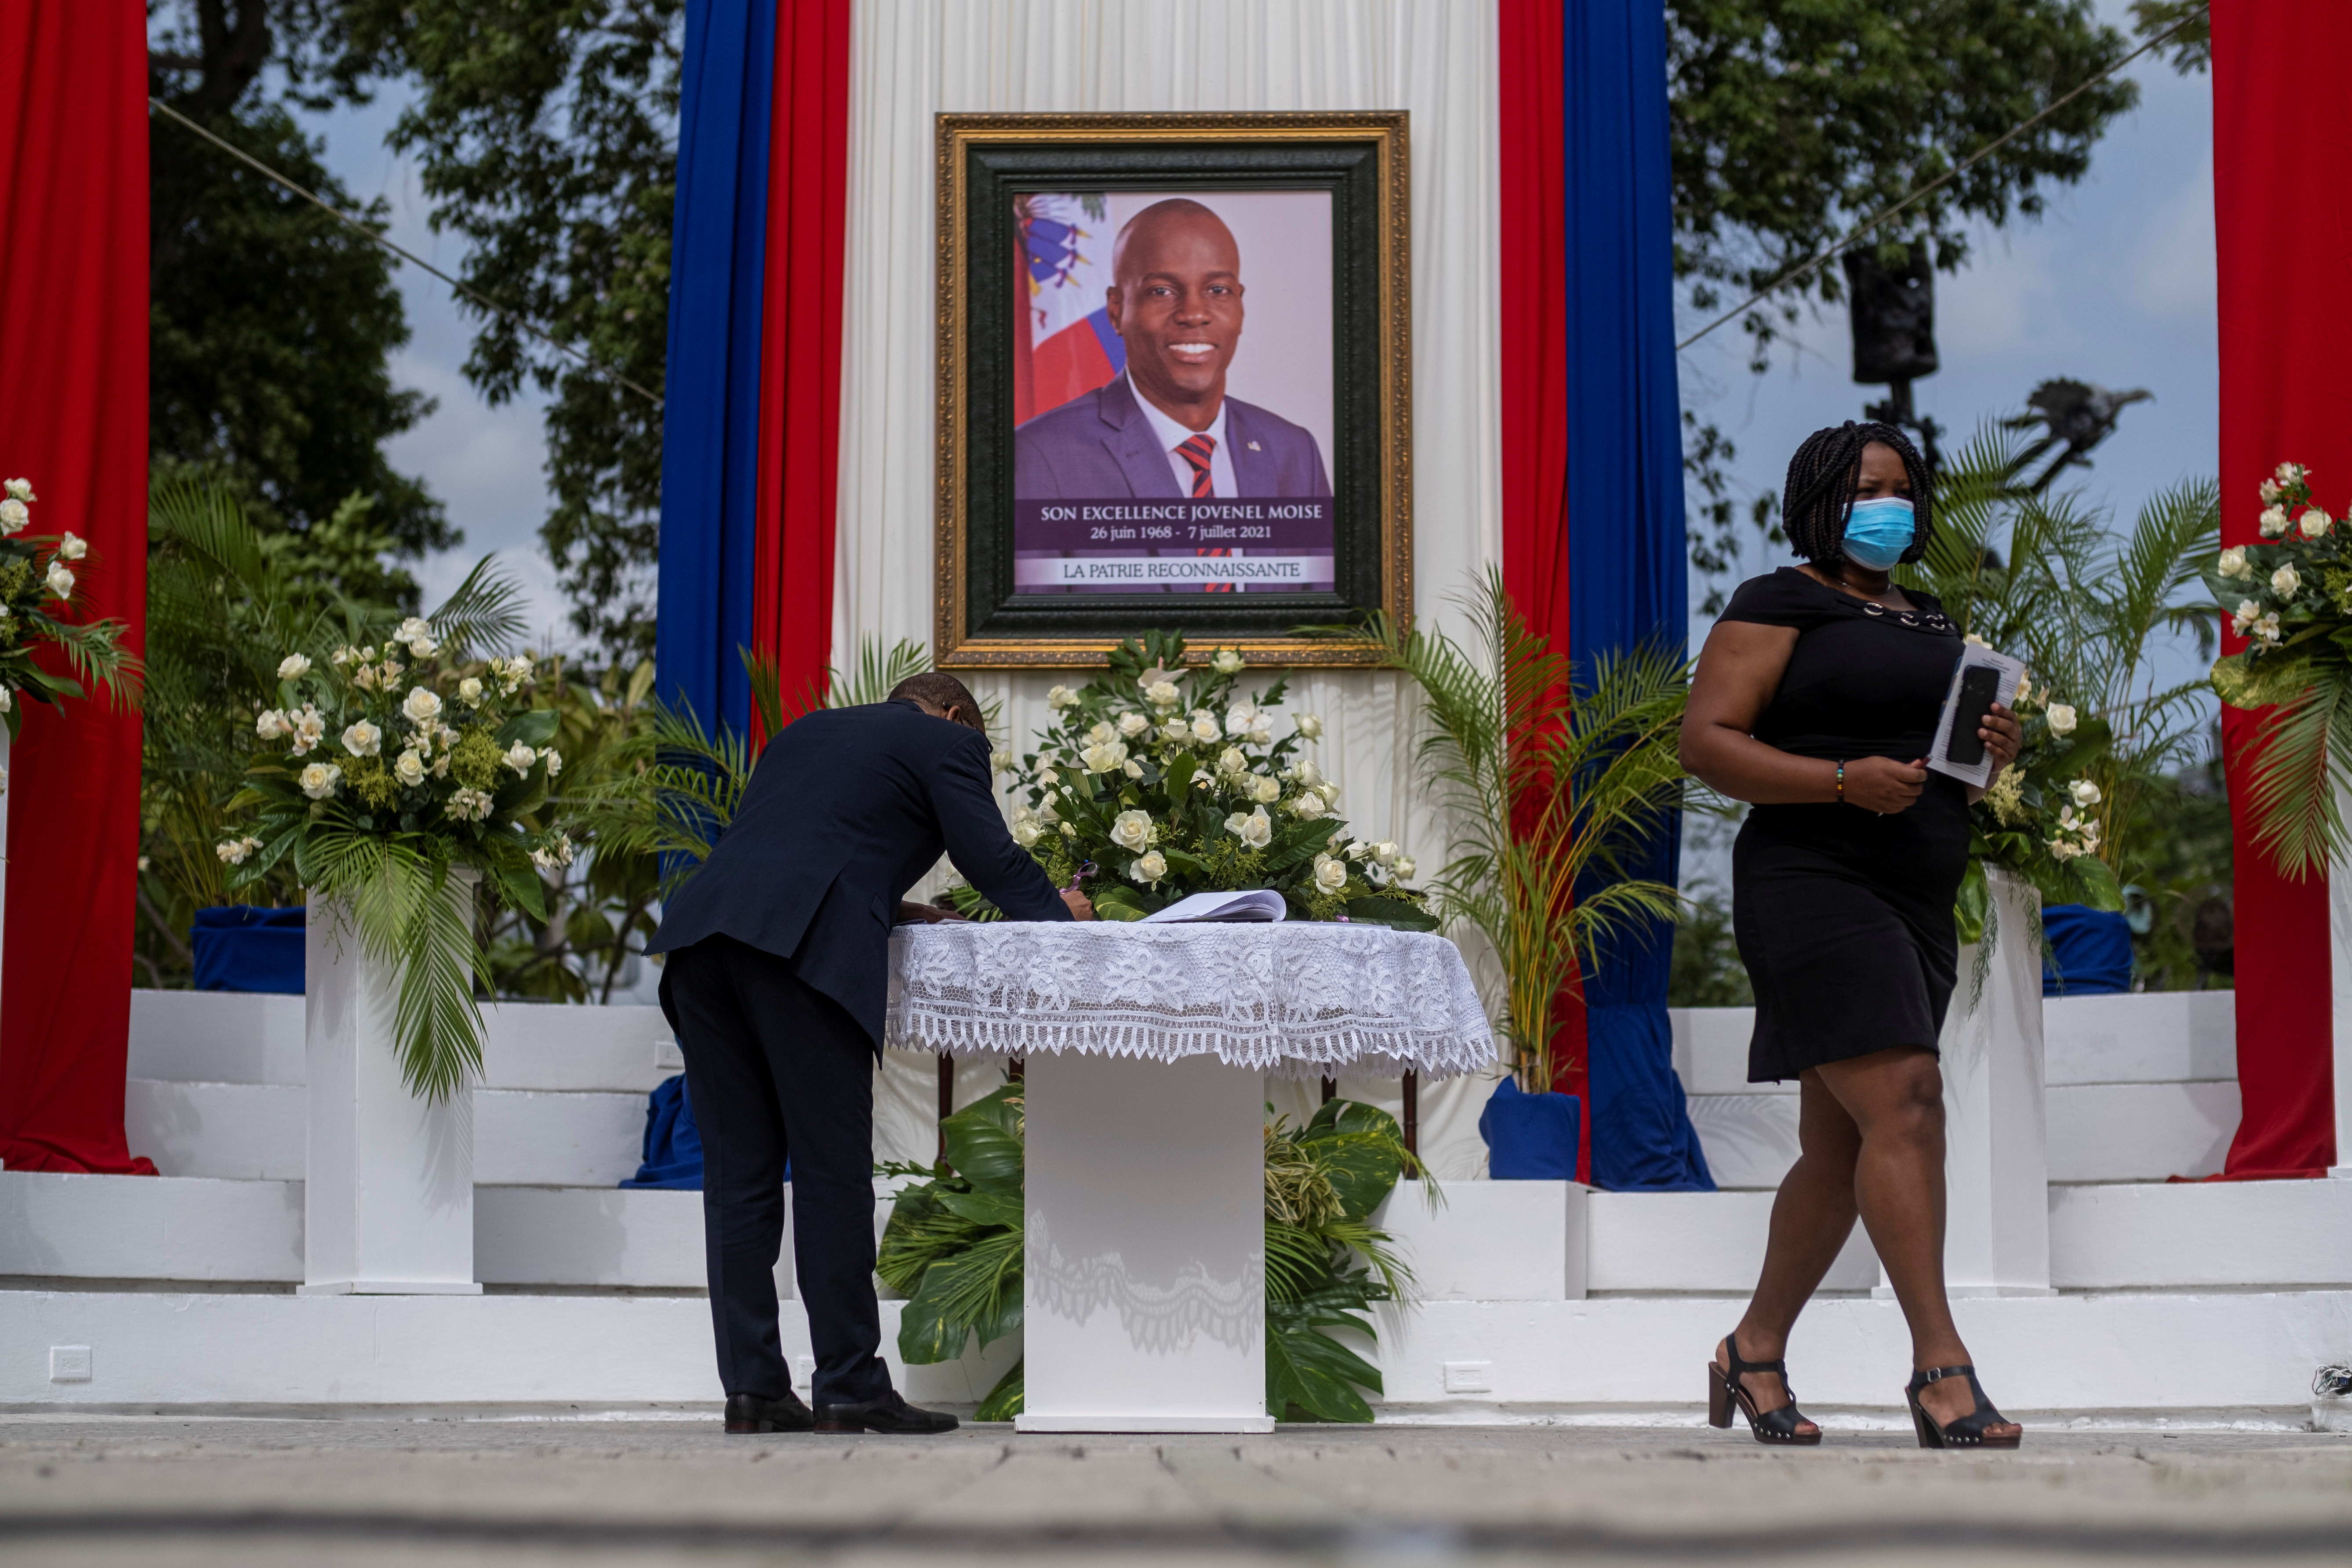 Personas asisten a una ceremonia en honor al fallecido presidente haitiano Jovenel Moise en Puerto Príncipe, Haití, el 20 de julio de 2021 (REUTERS/Ricardo Arduengo)